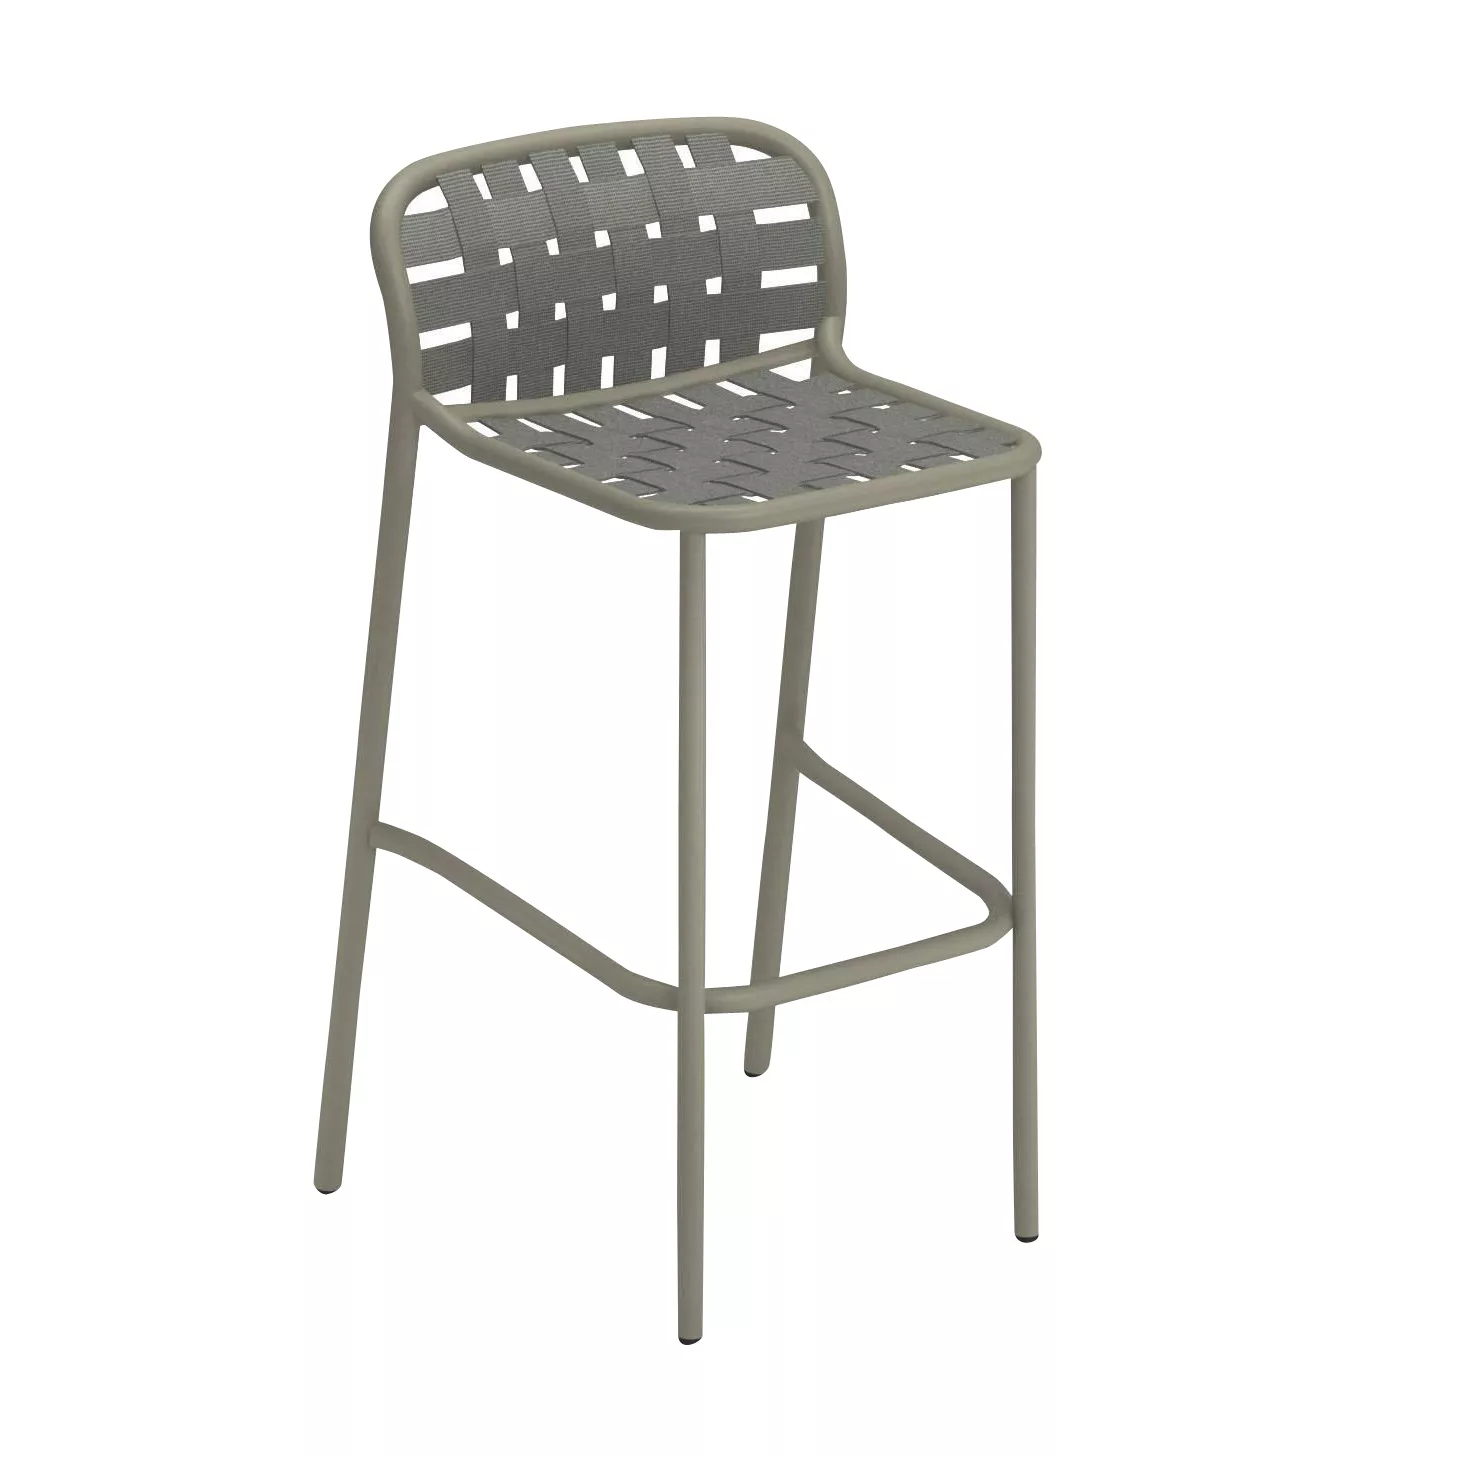 emu - Yard Outdoor Barhocker - graugrün/Sitz elastische Gurte graugrün/BxHx günstig online kaufen